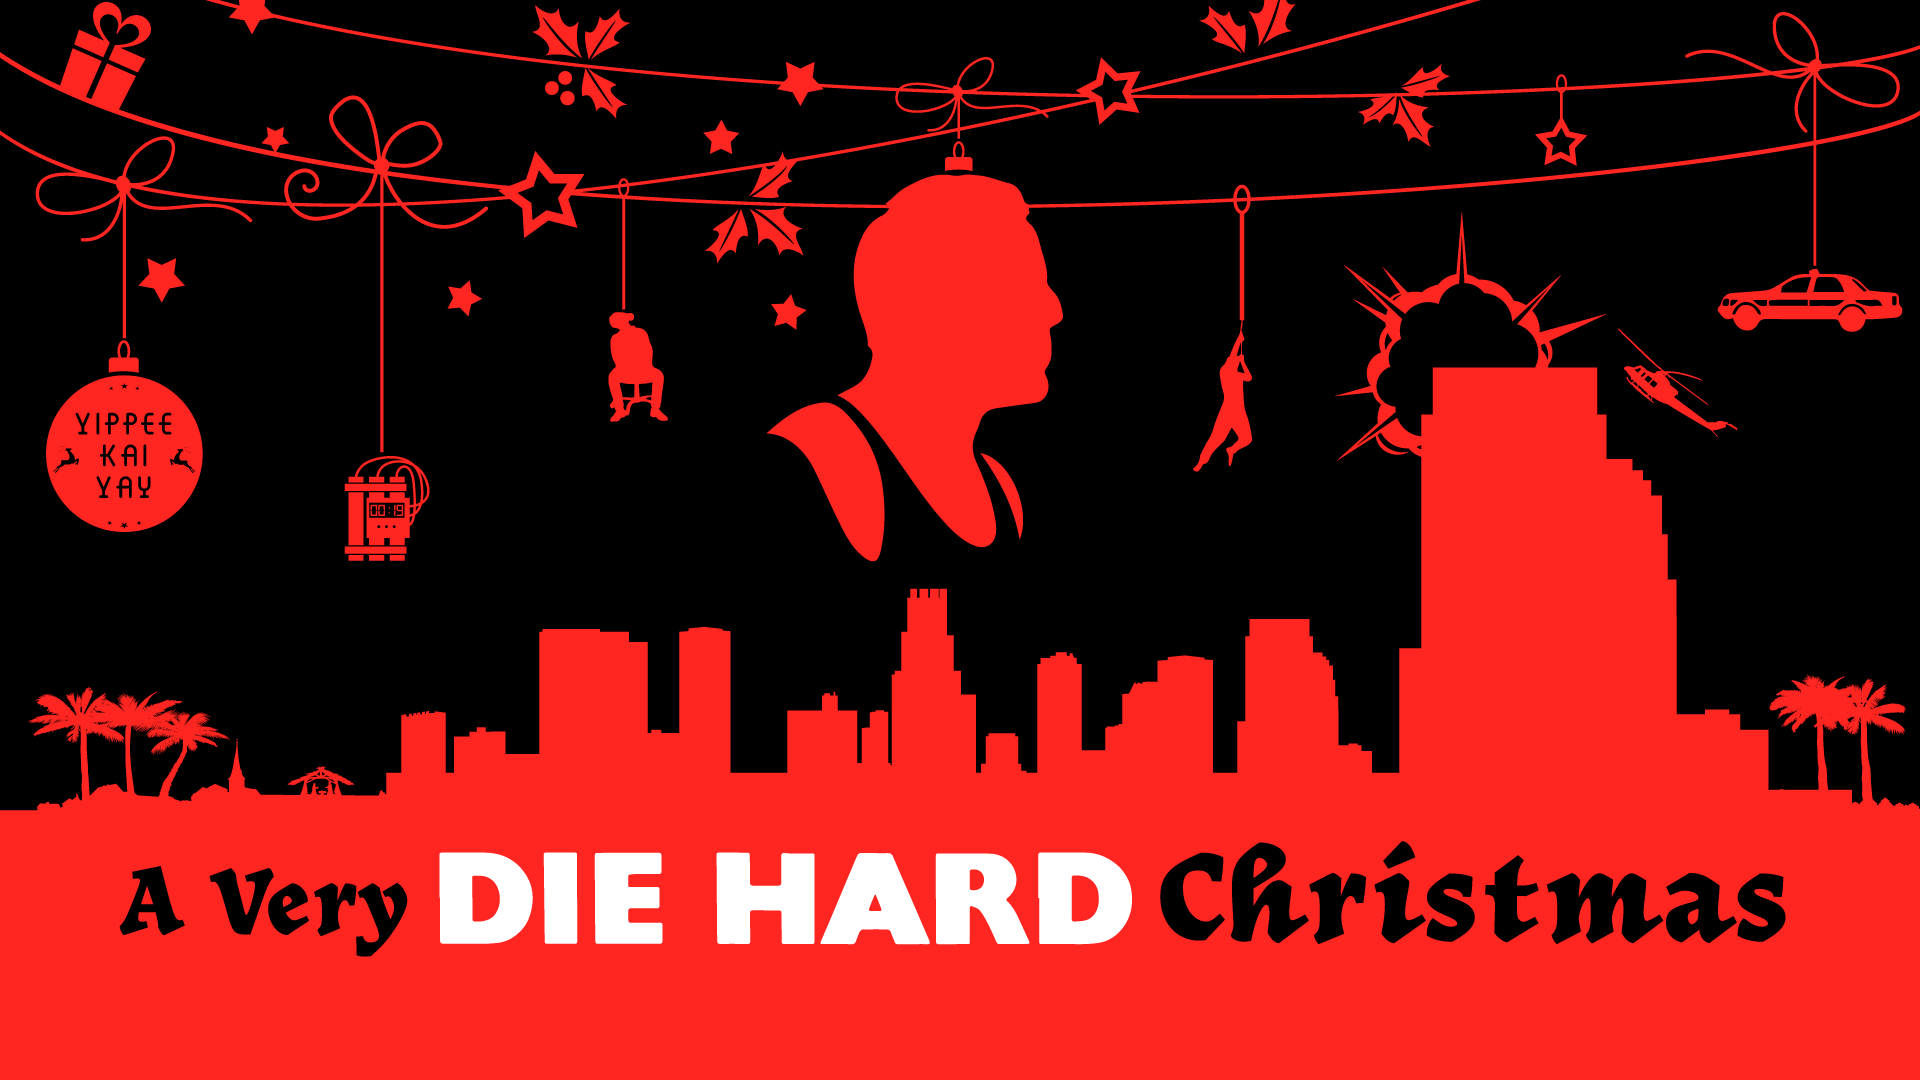 “A Very Die Hard Christmas”